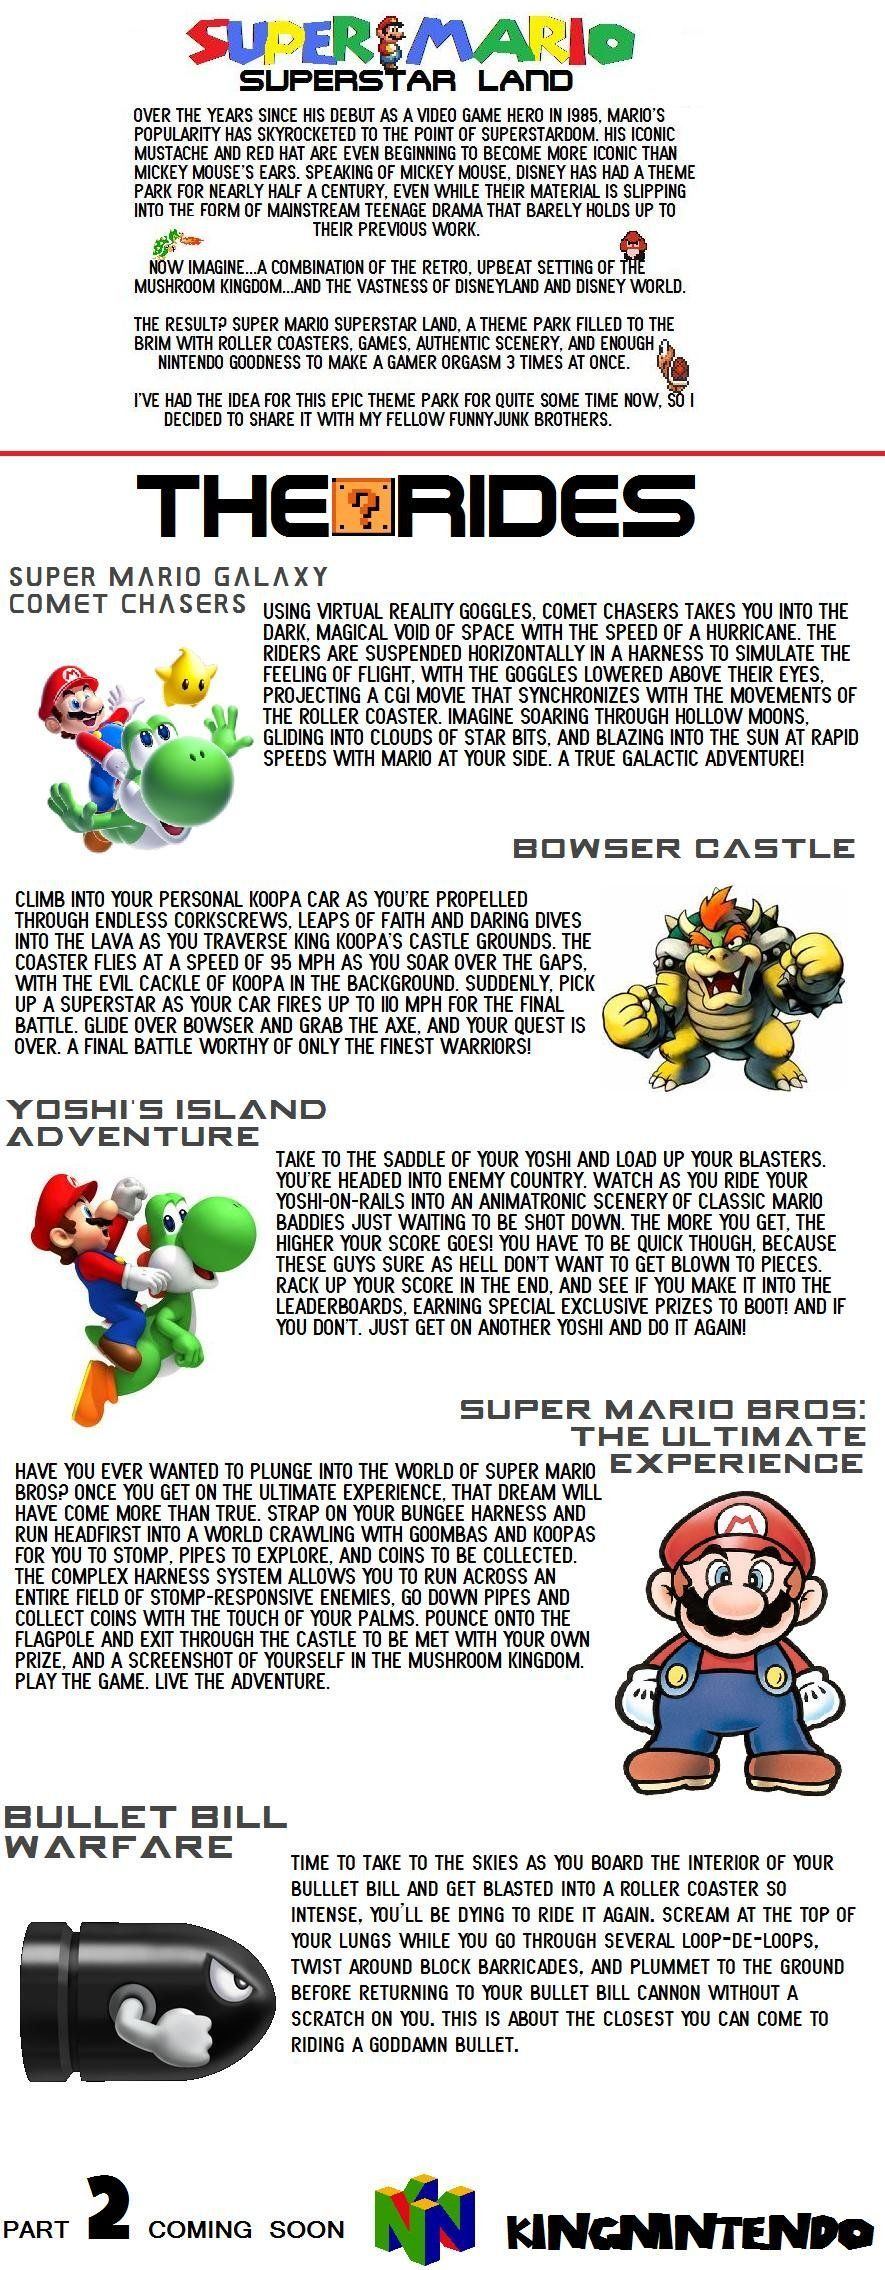 Mario bowser castle orgasm